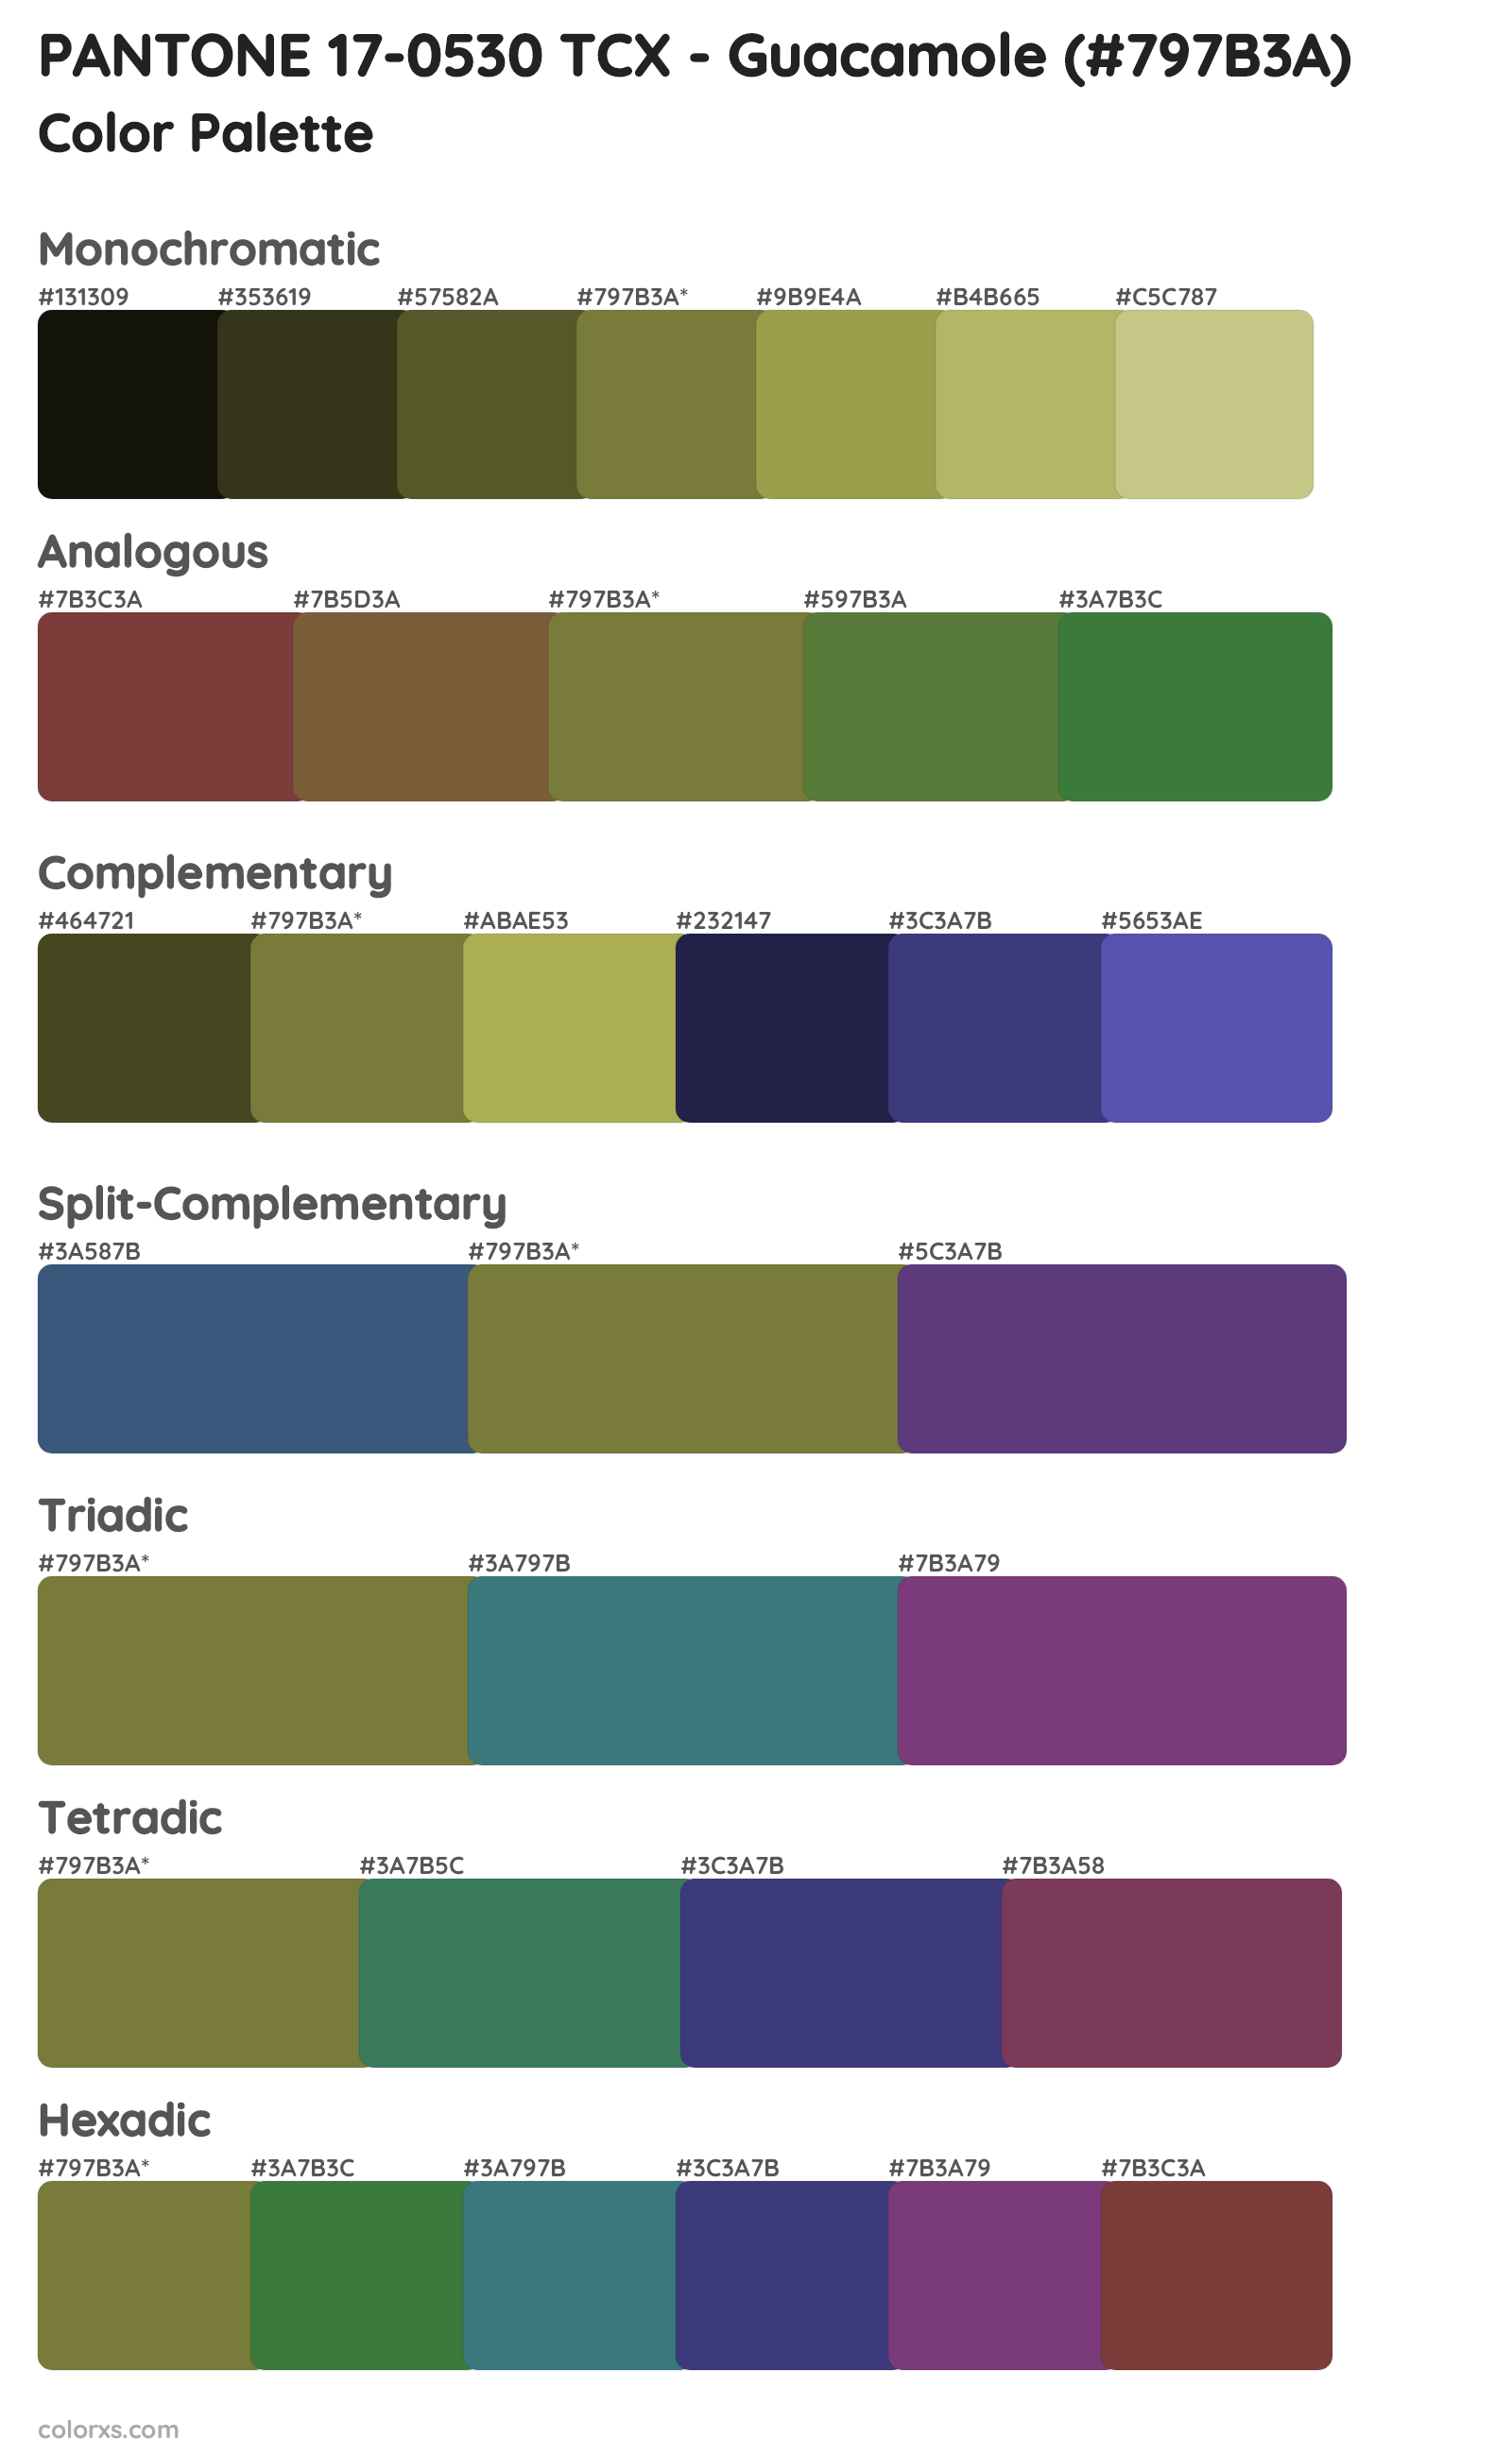 PANTONE 17-0530 TCX - Guacamole Color Scheme Palettes